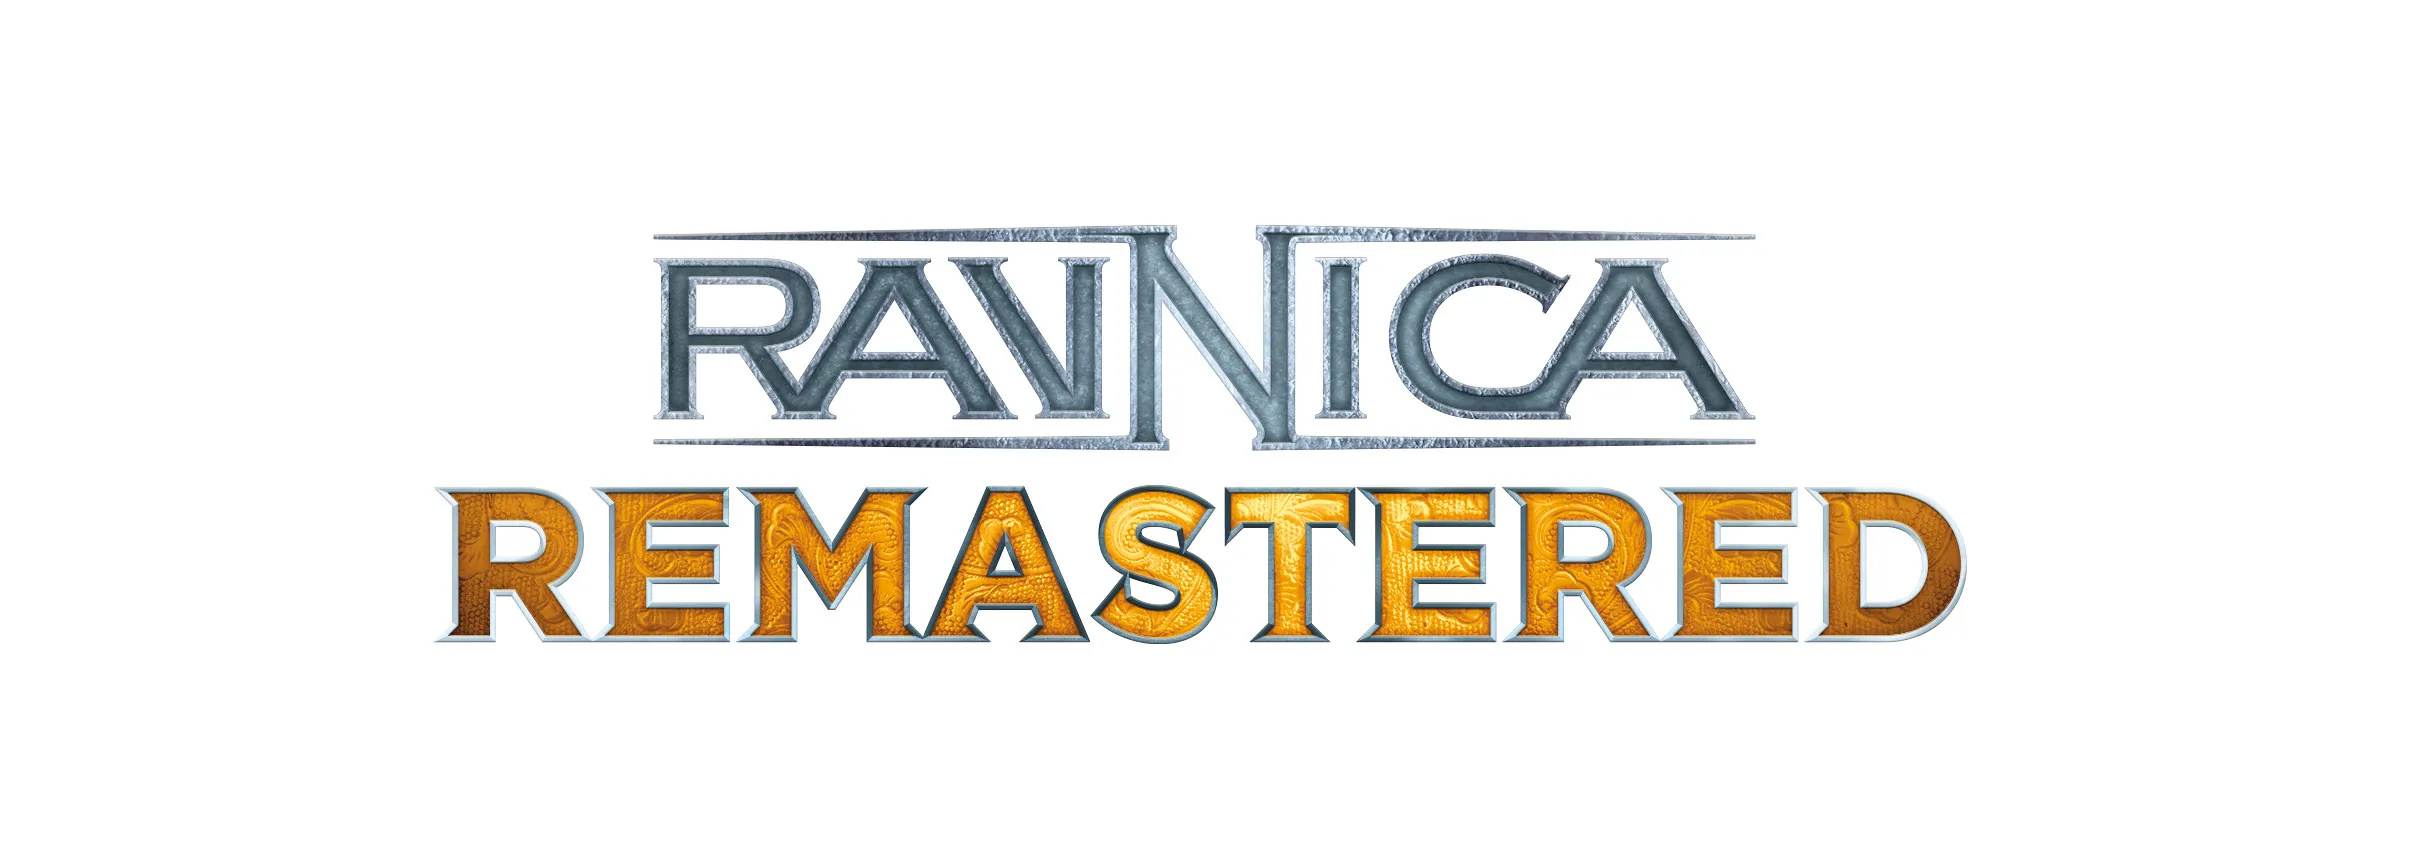 Afbeelding als logo voor MTG Ravnica Remastered